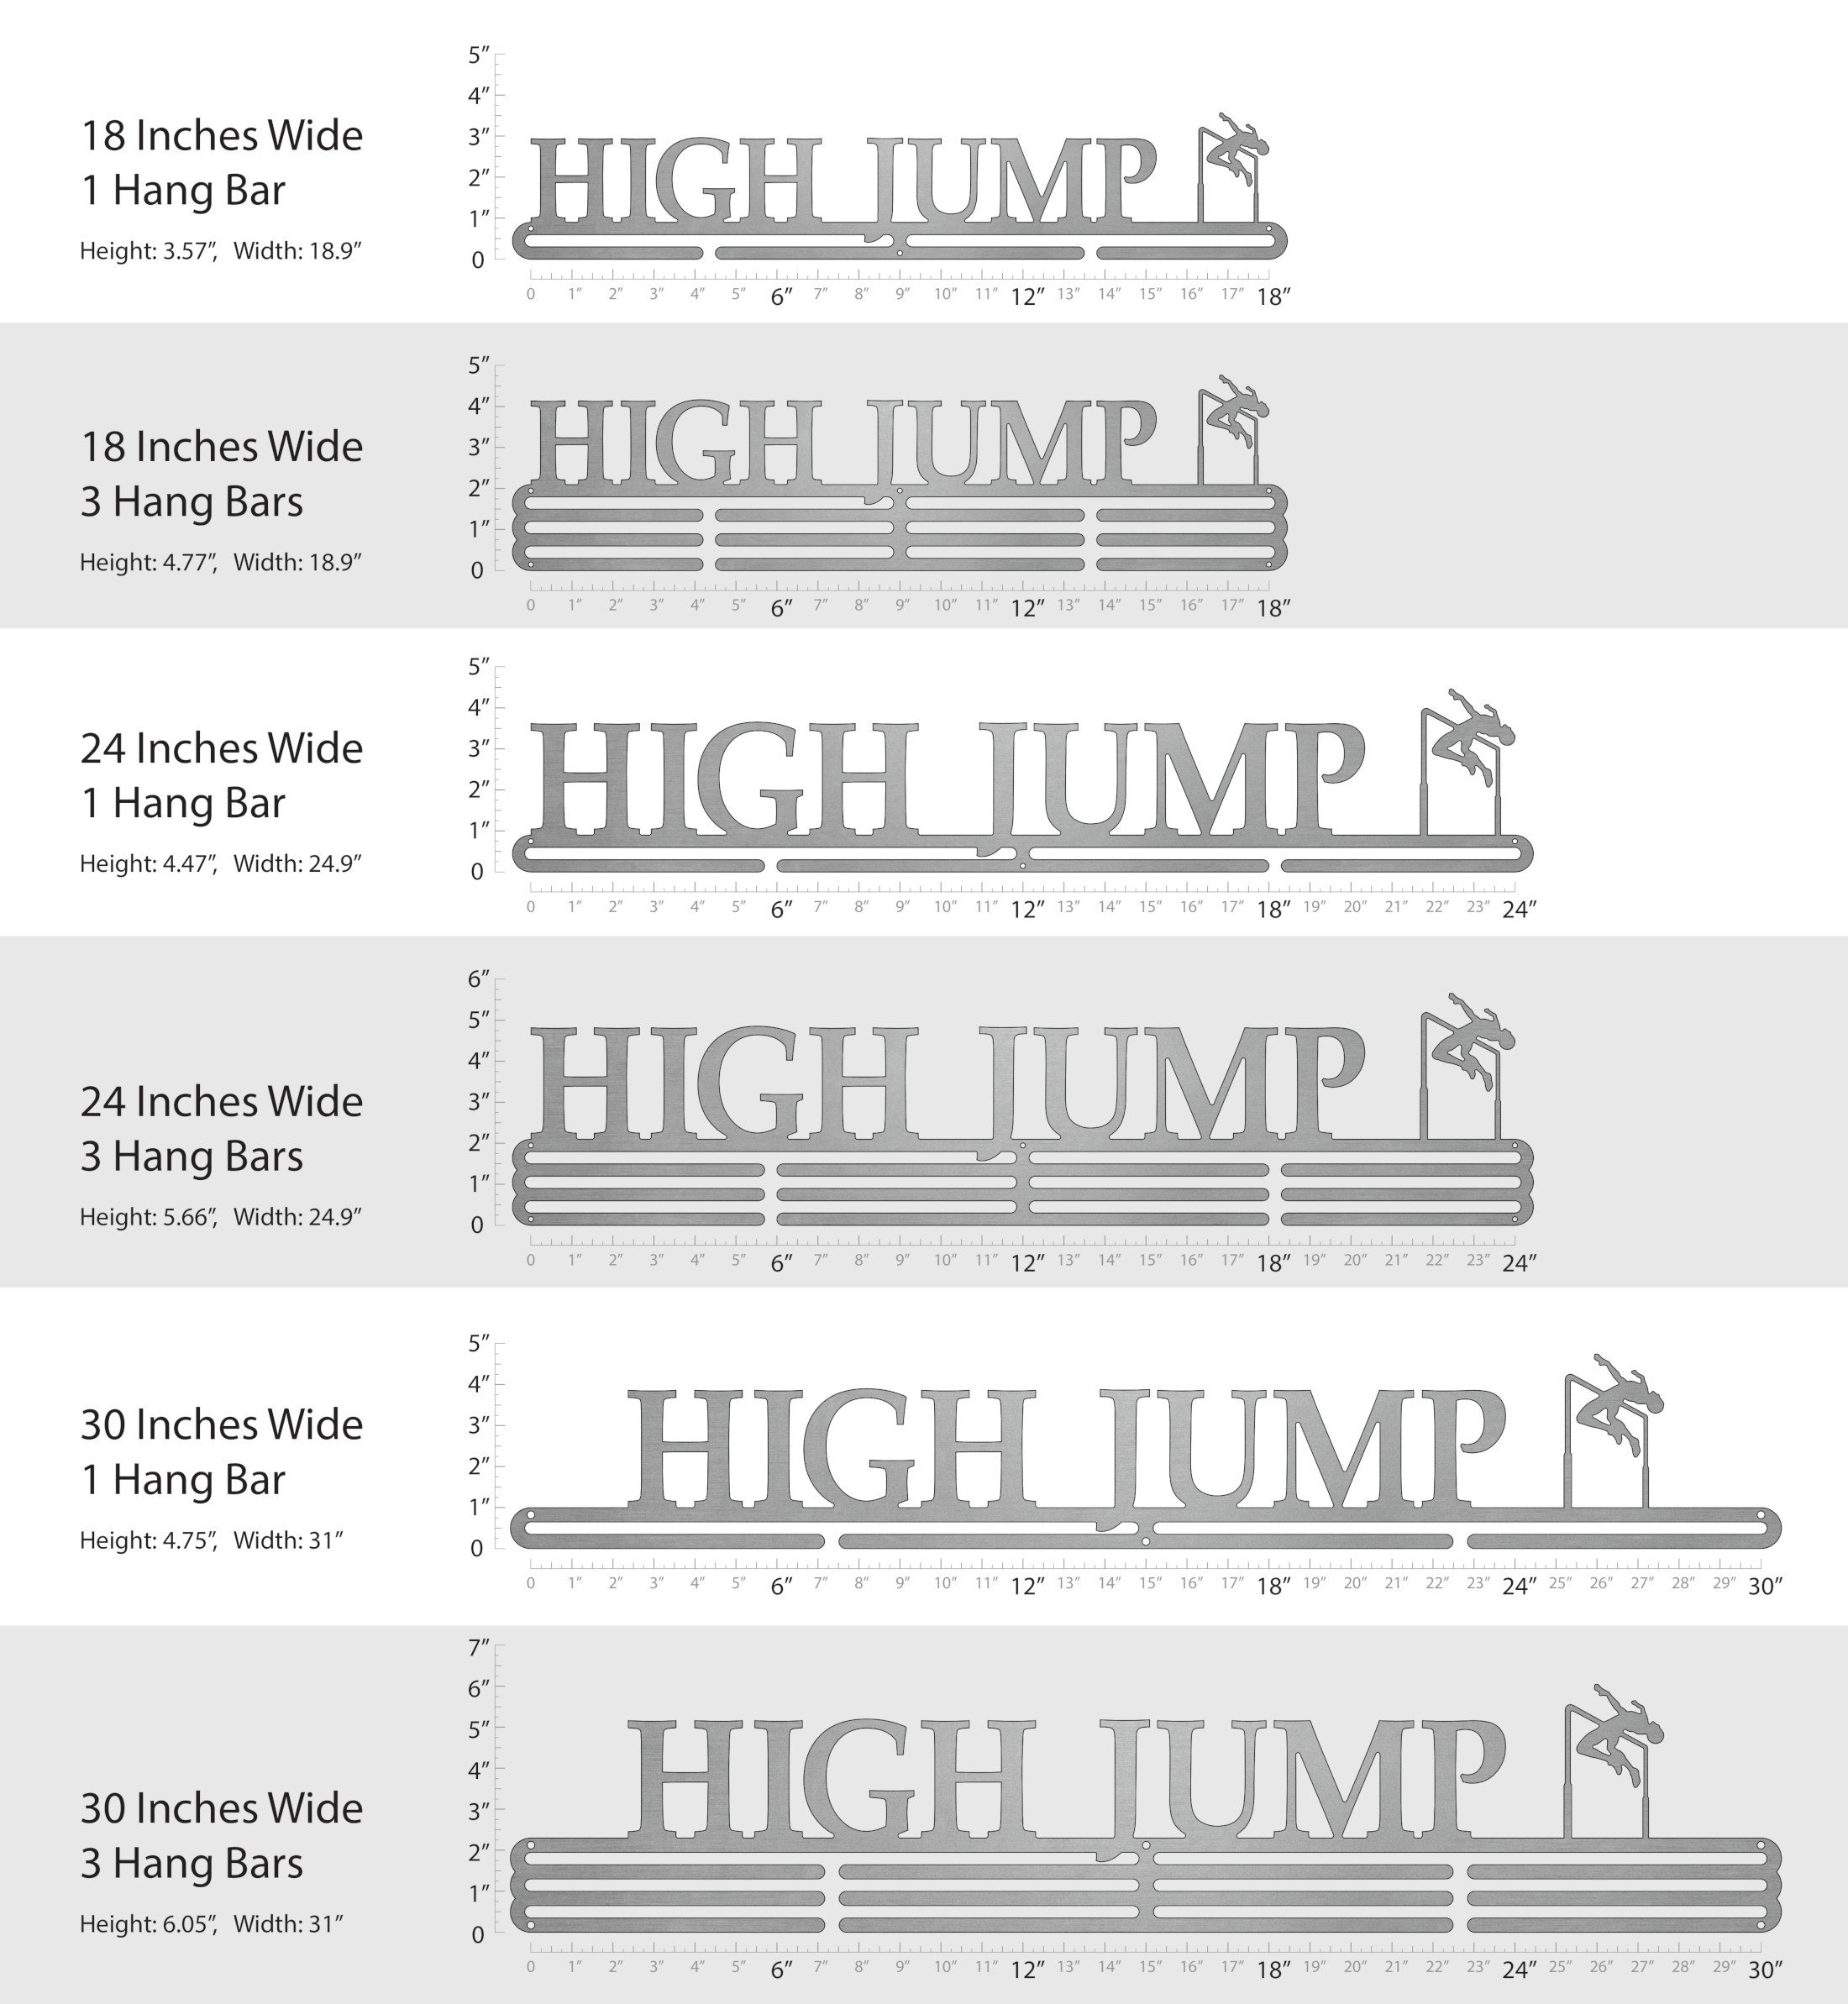 High Jump - Male 